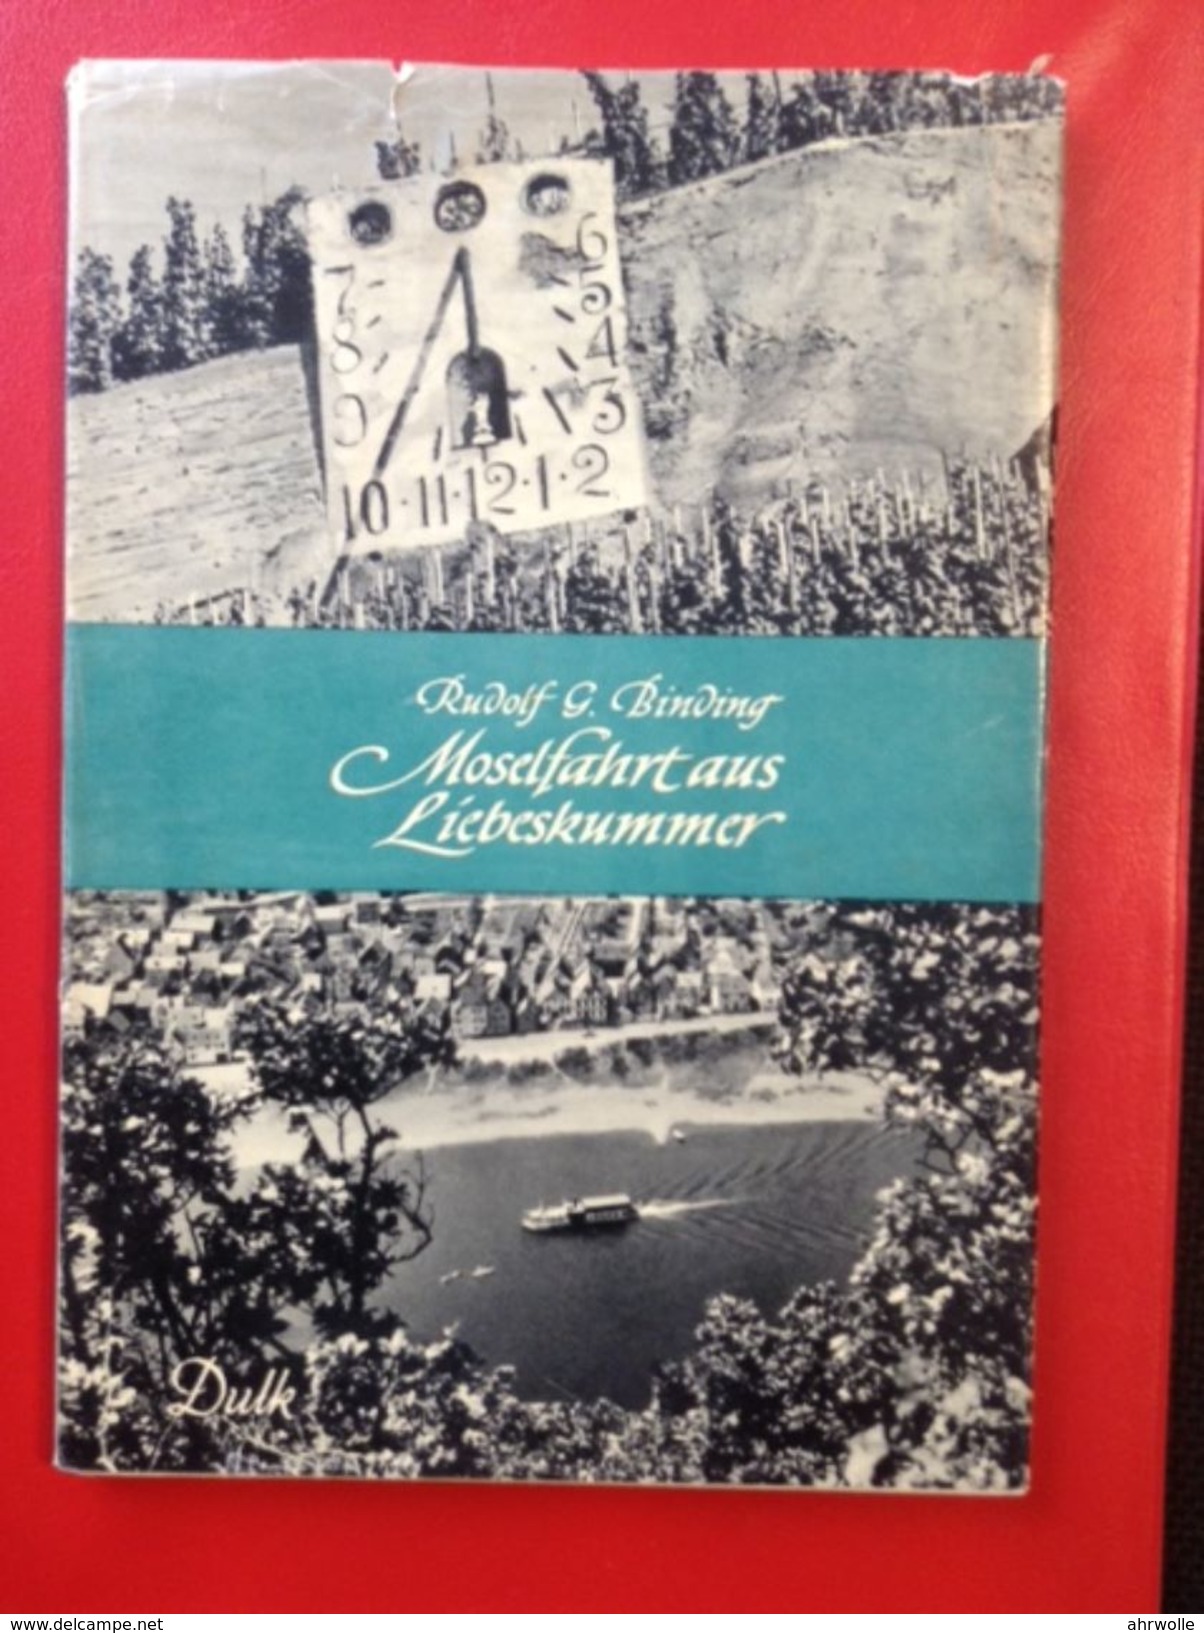 Rudolf G Binding Moselfahrt Aus Liebeskummer 1952 Novelle Einer Landschaft - Rhénanie-Palatinat